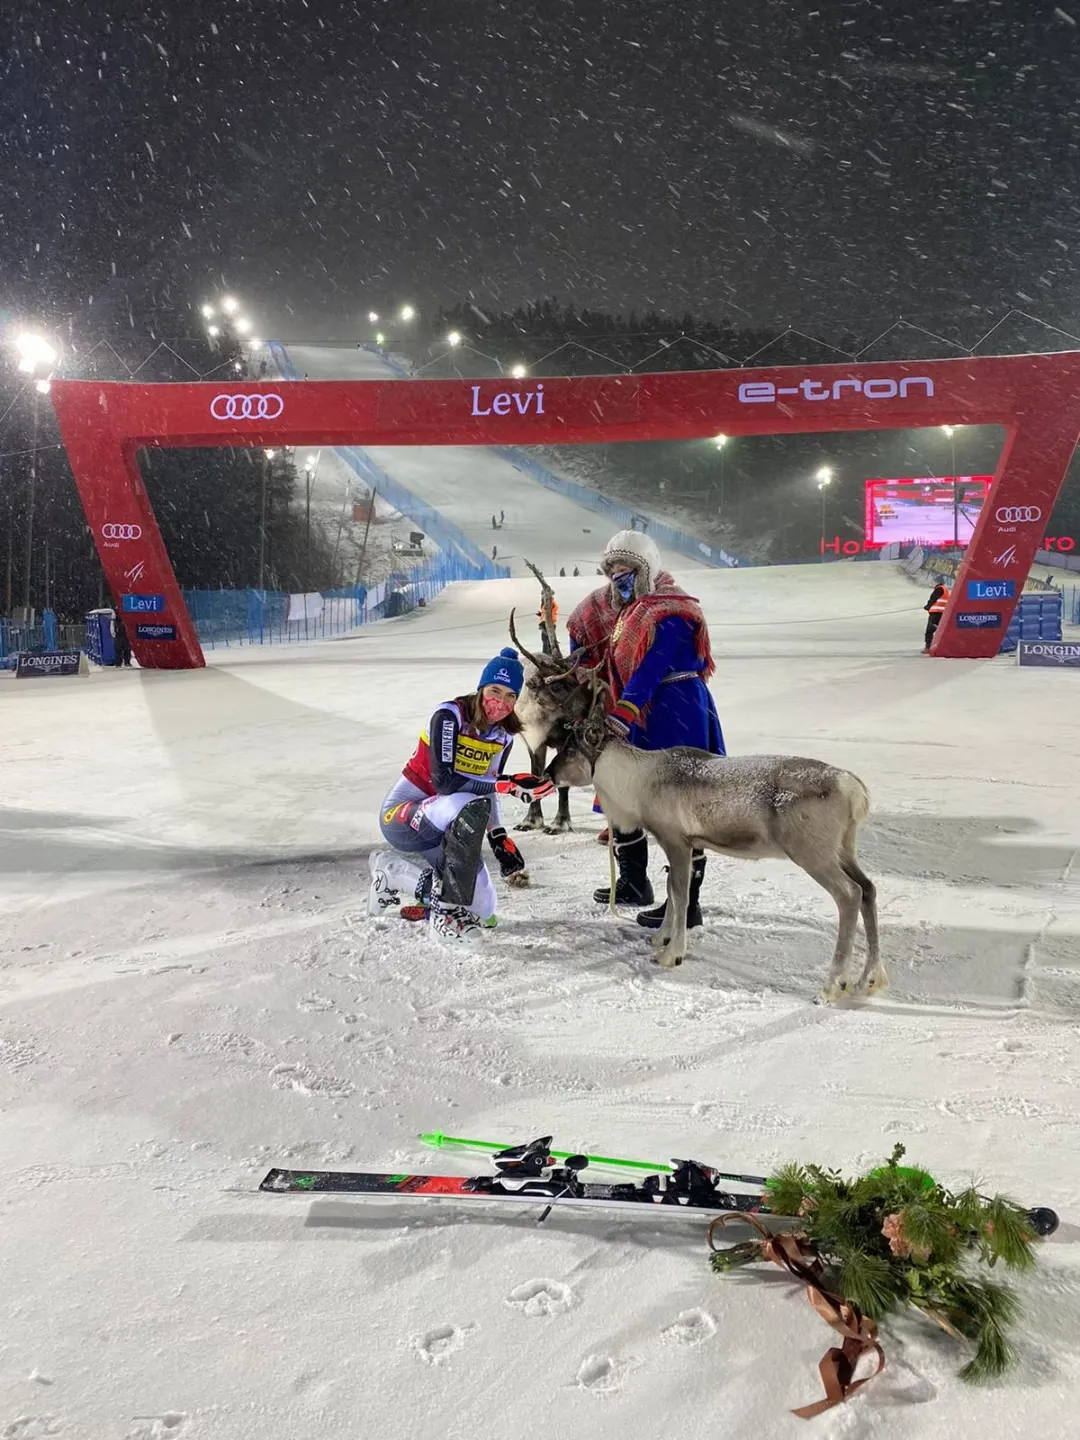 Slovakia's Petra Vlhova wins women's slalom gold at Beijing Olympics